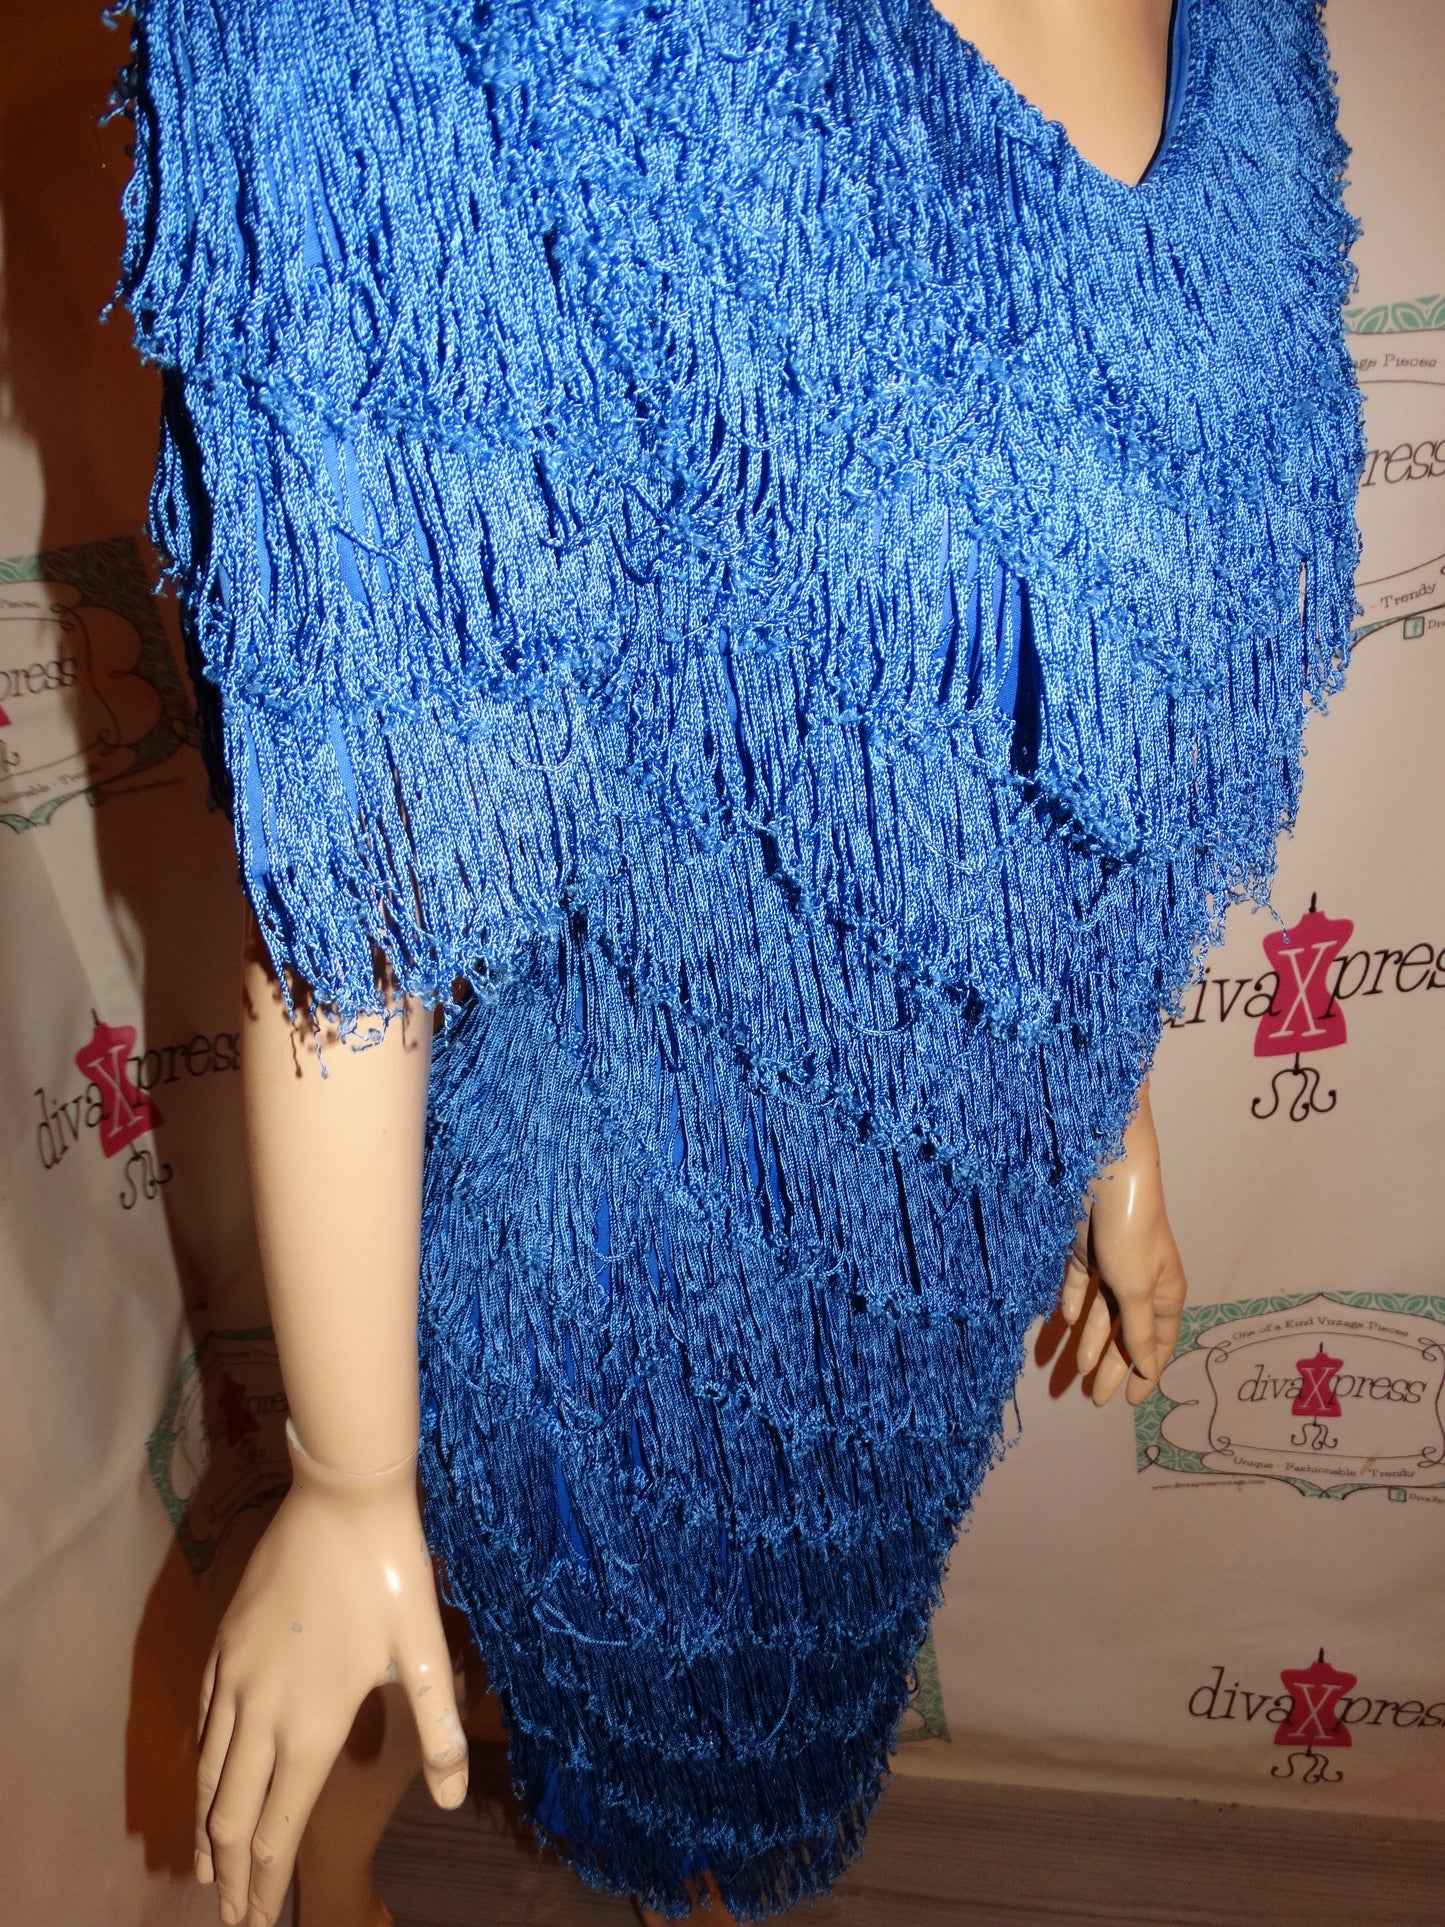 Vintage ONN Blue Shingle Dress Size M